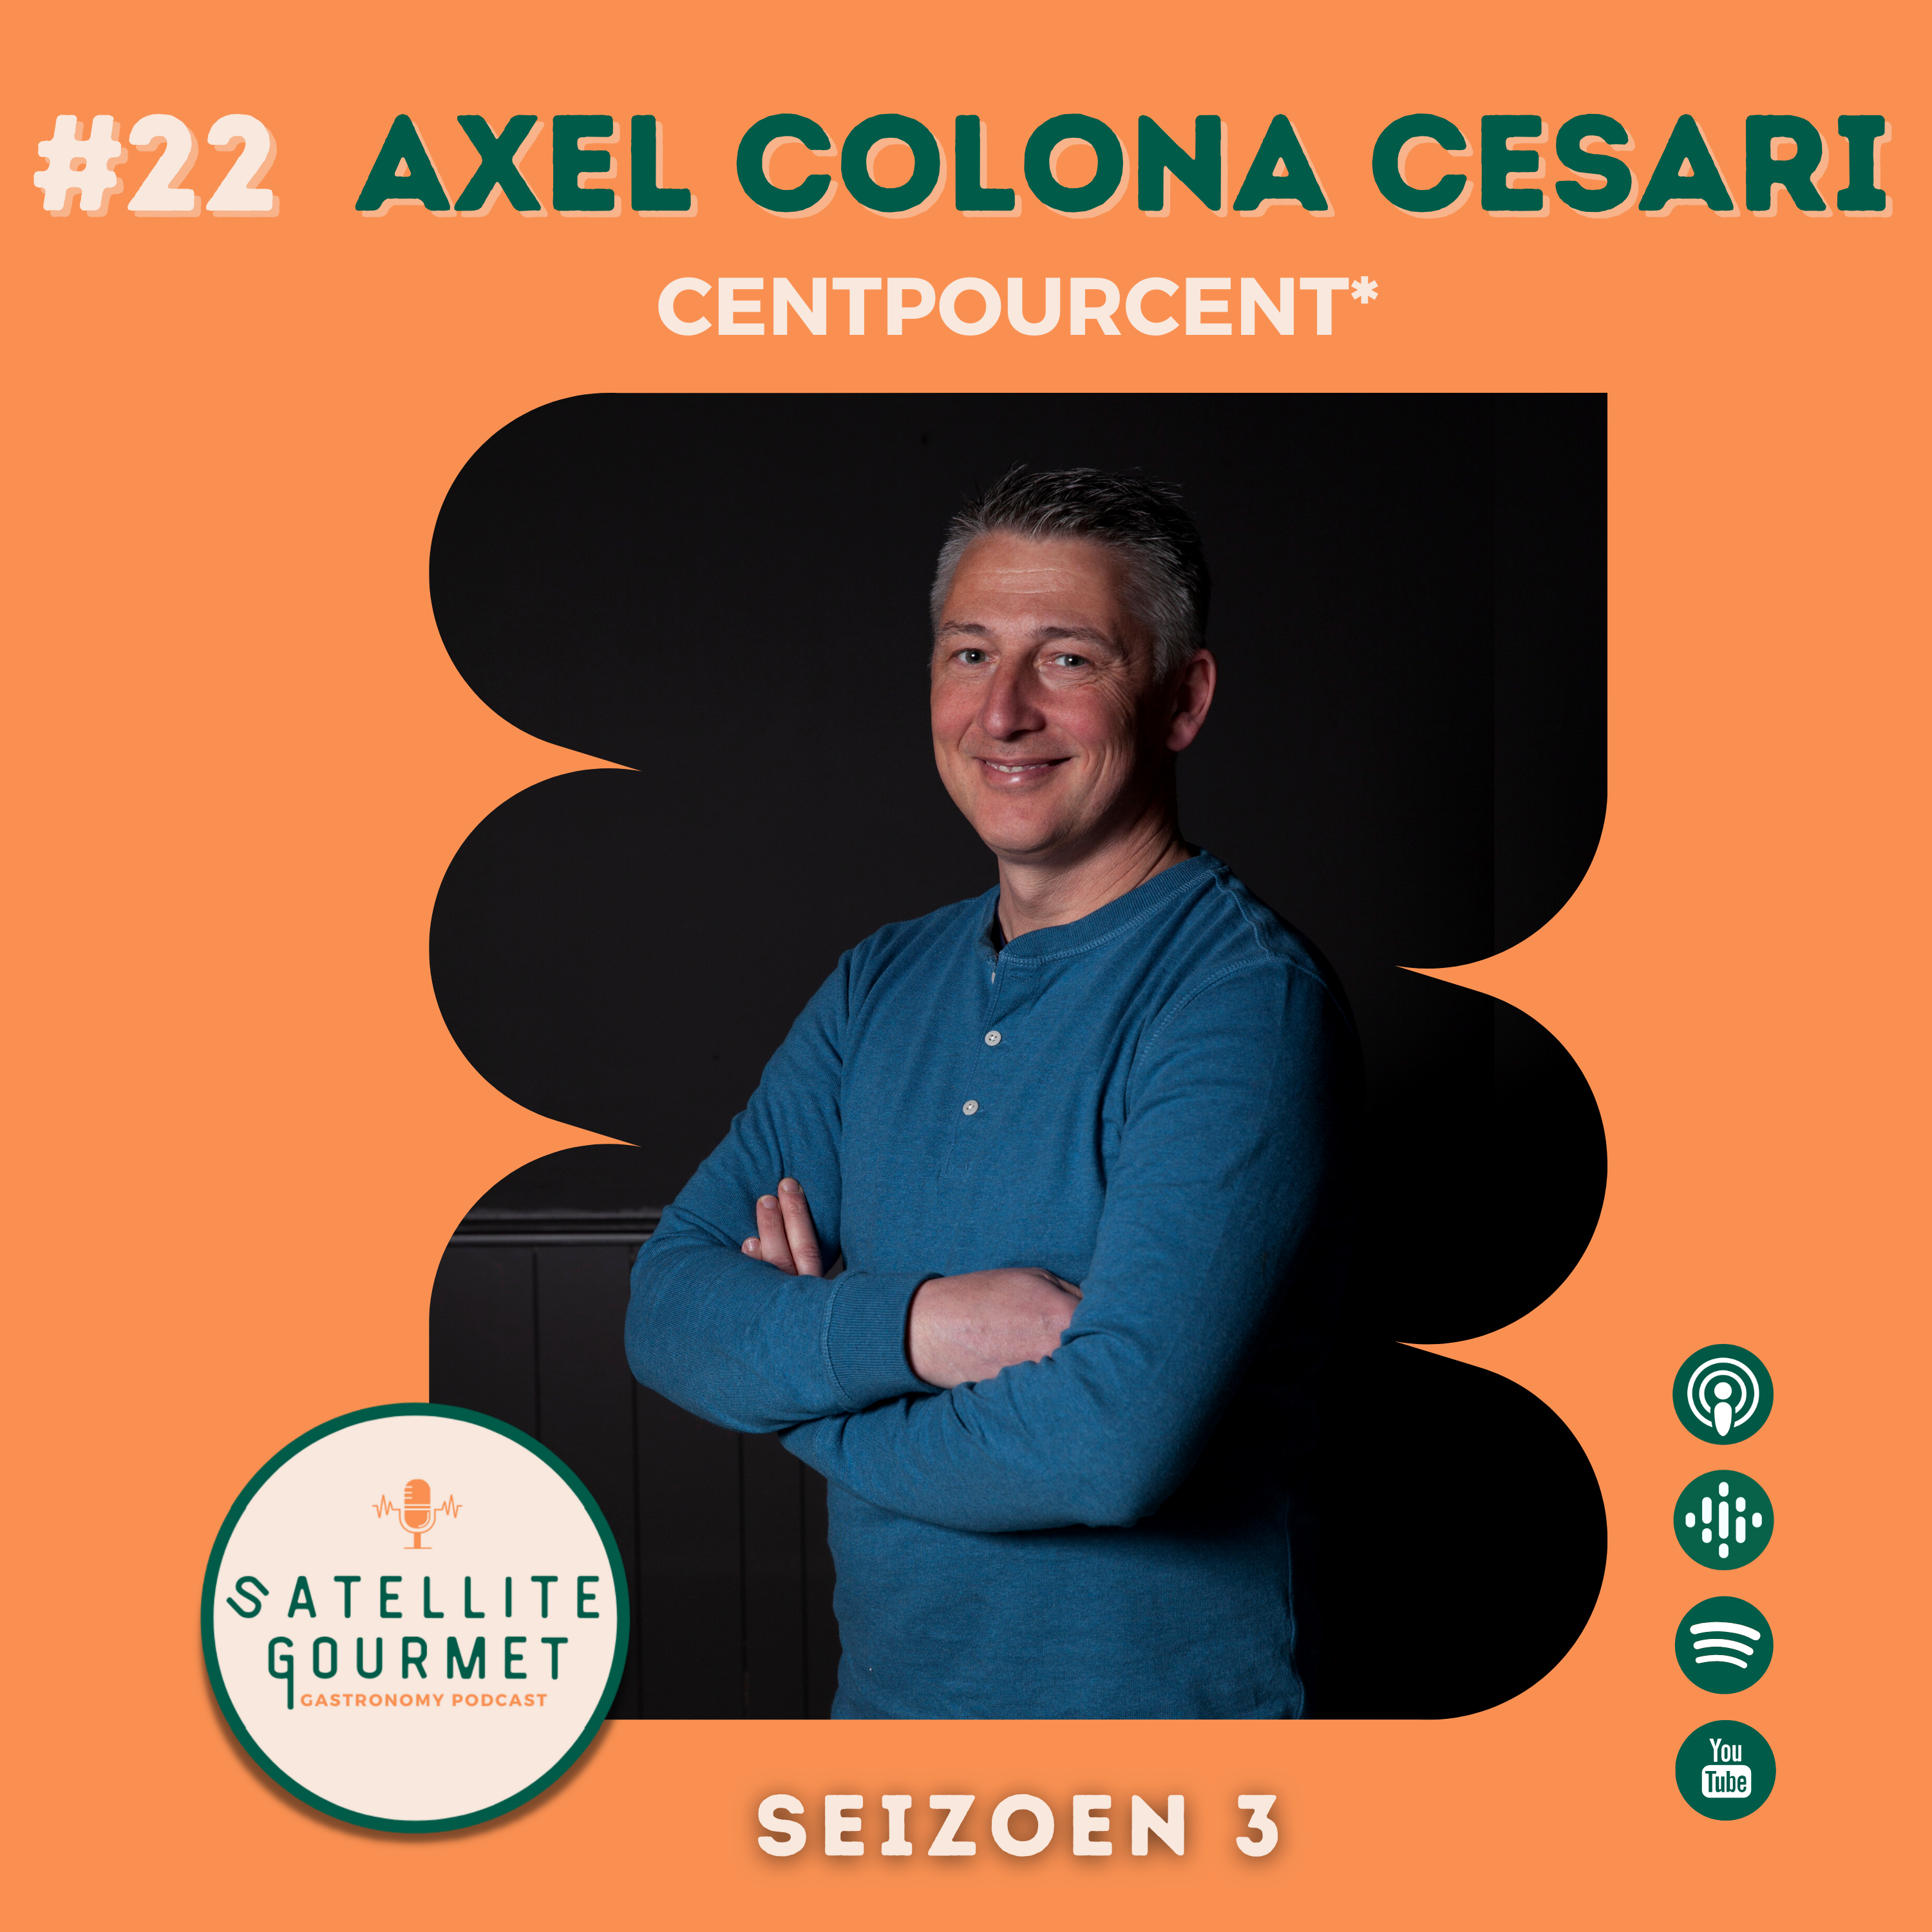 Axel Colona Cesari